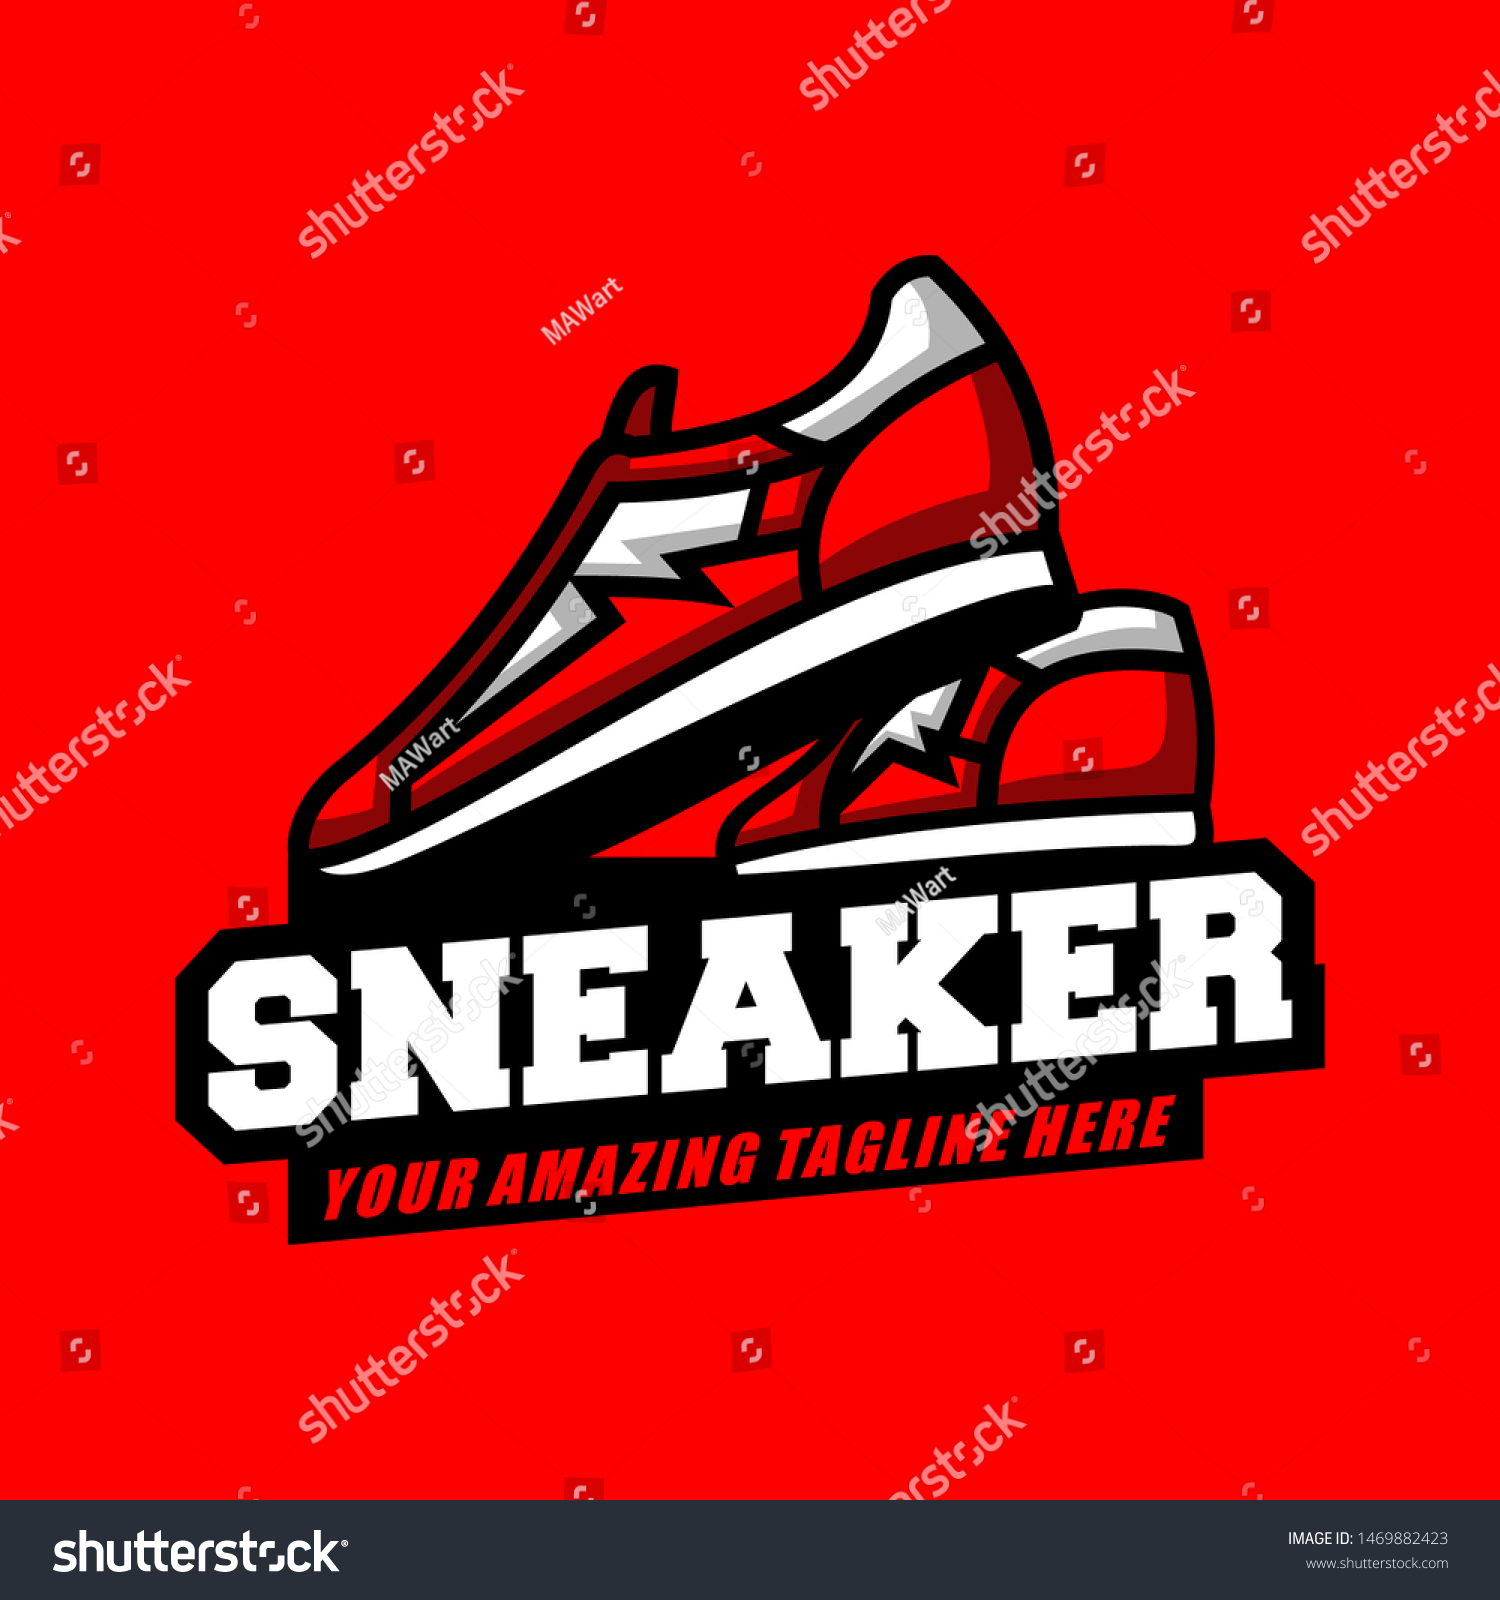 50 Footware logo Images, Stock Photos & Vectors | Shutterstock